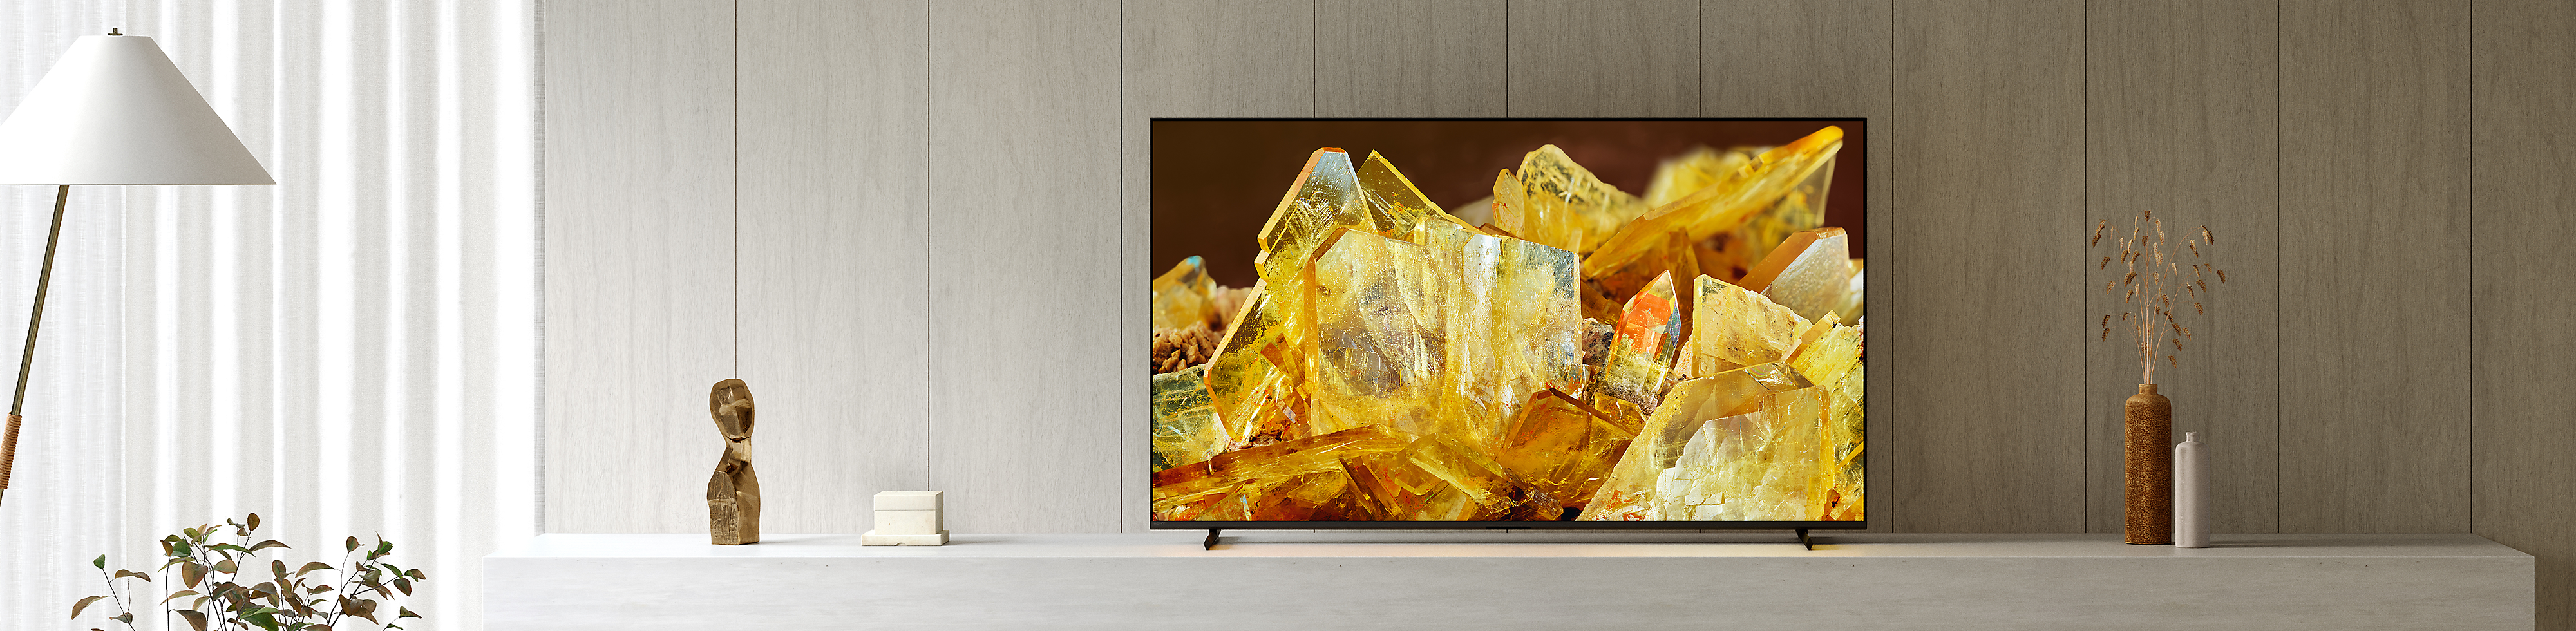 BRAVIA XR-TV i en dagligstue, der viser et nærbillede af ravfarvede krystaller